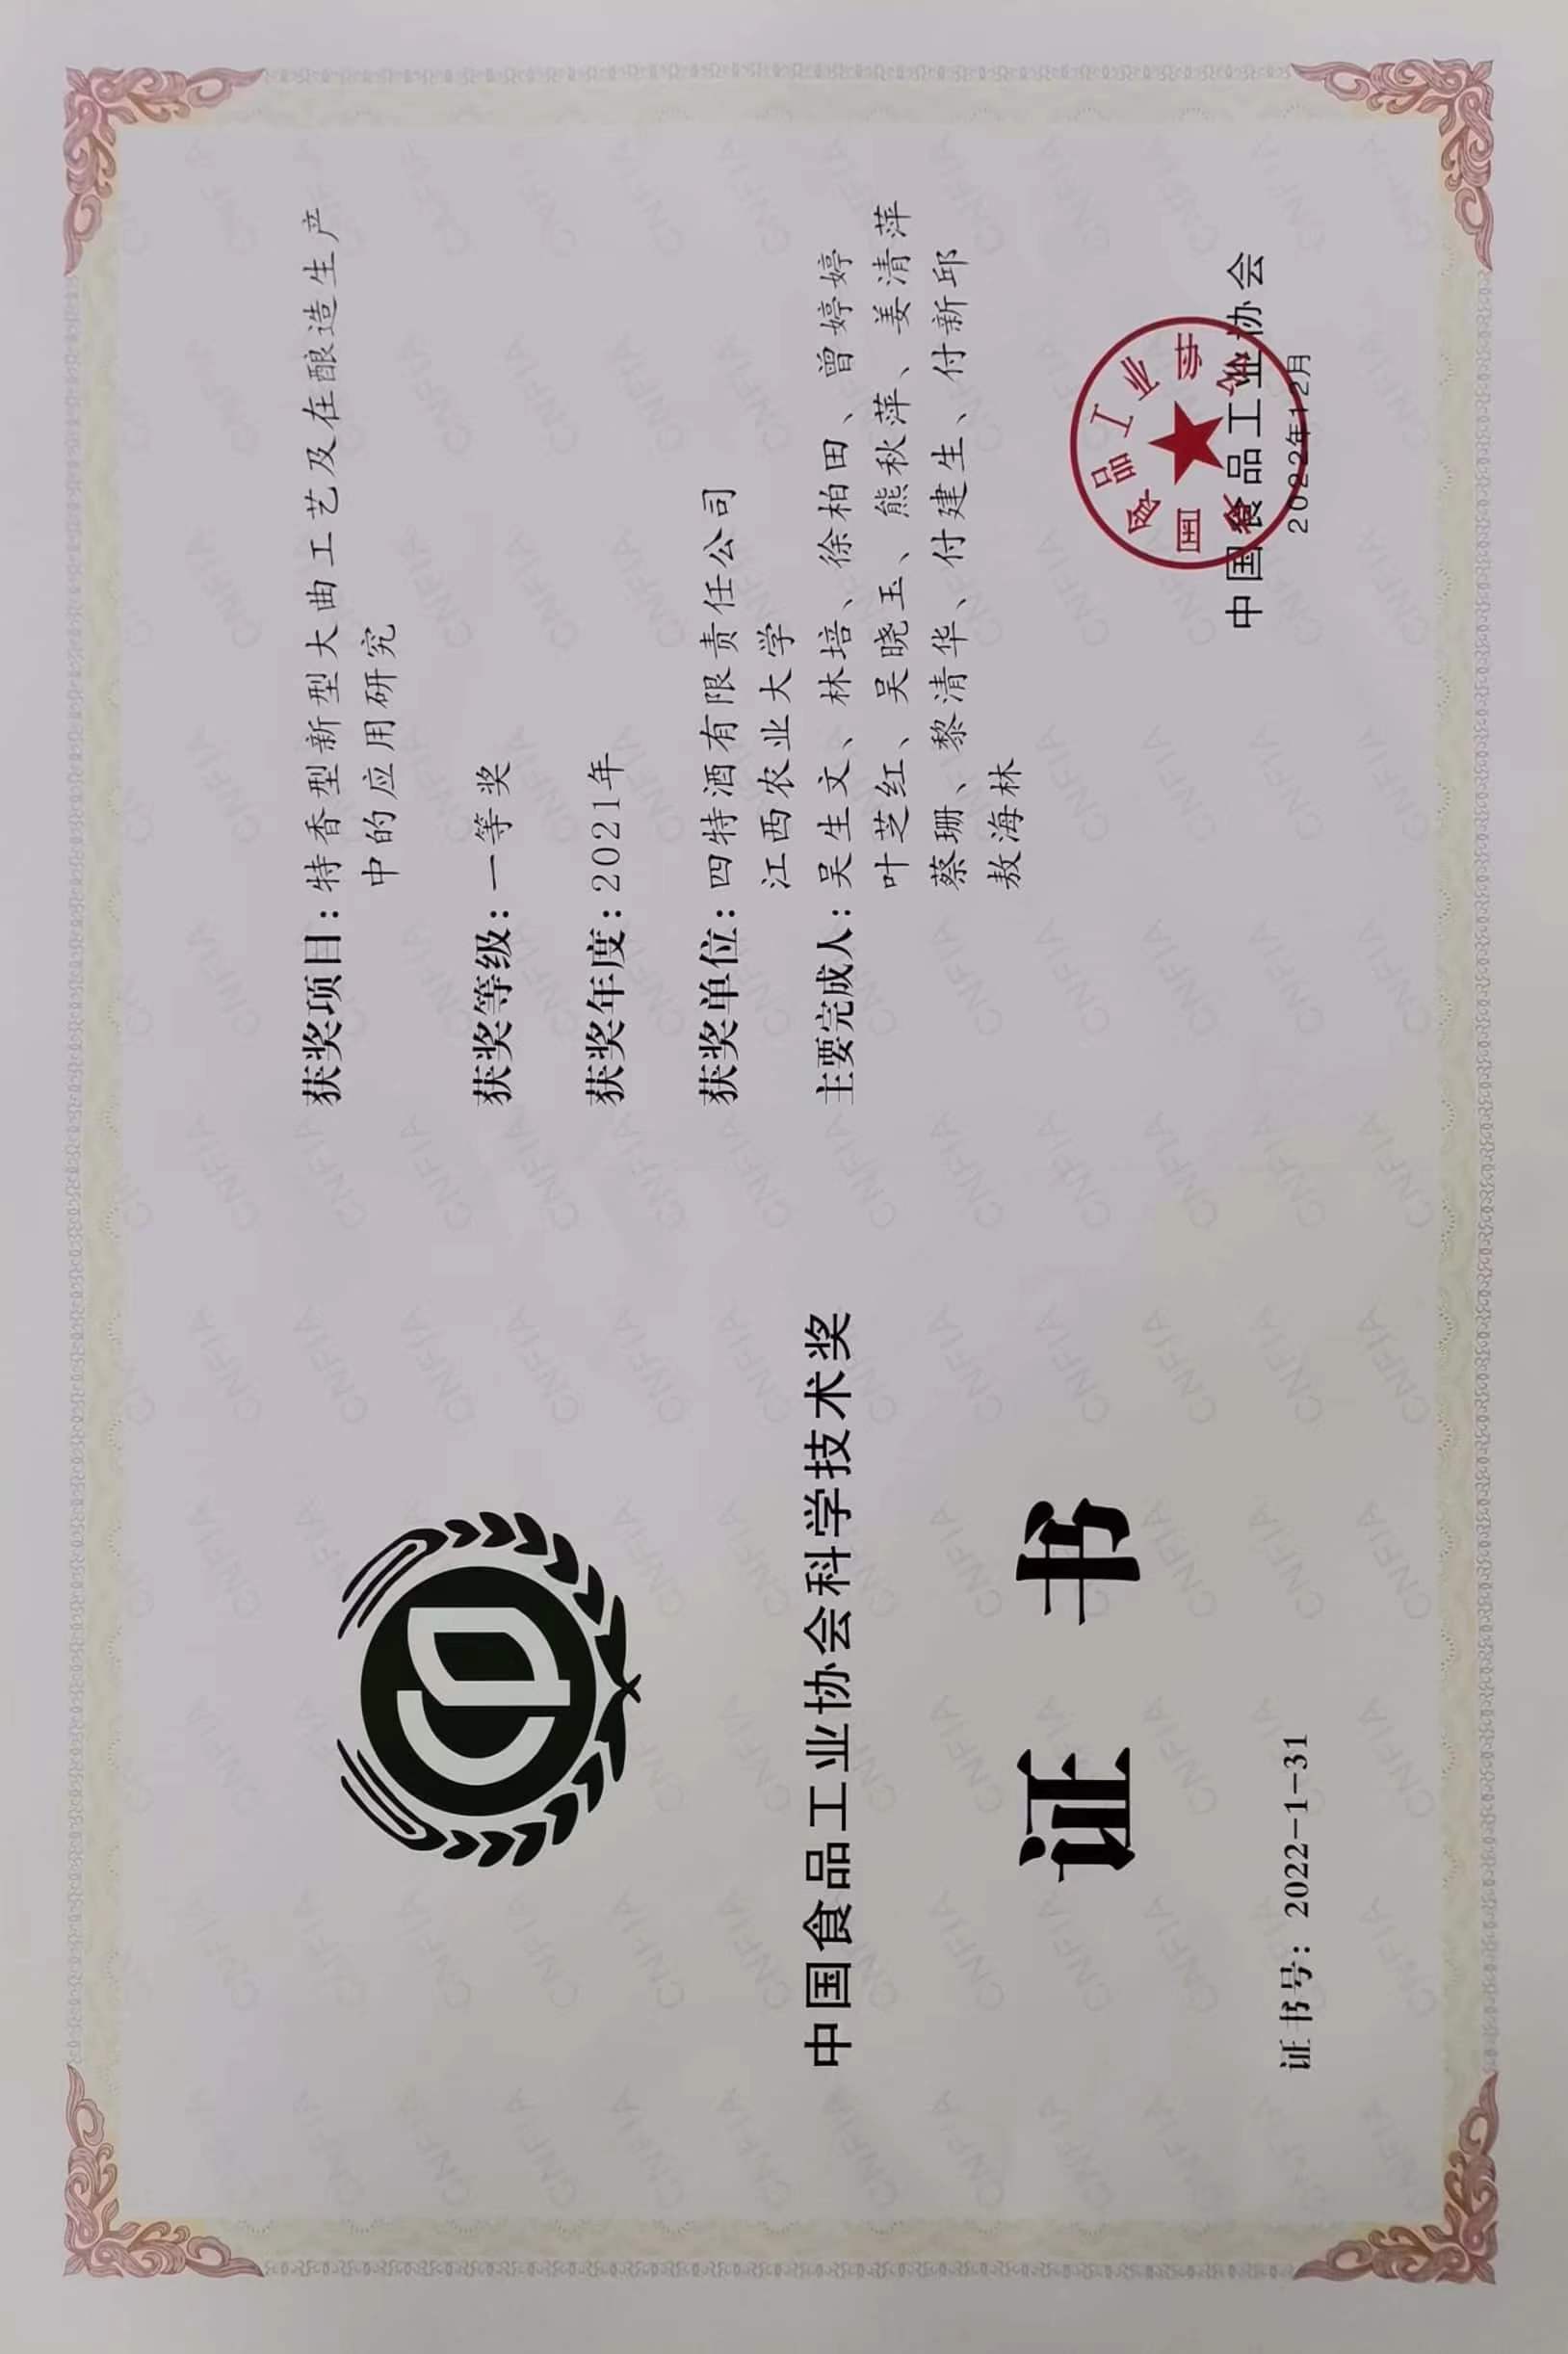 中国食品工业协会科学技术一等奖